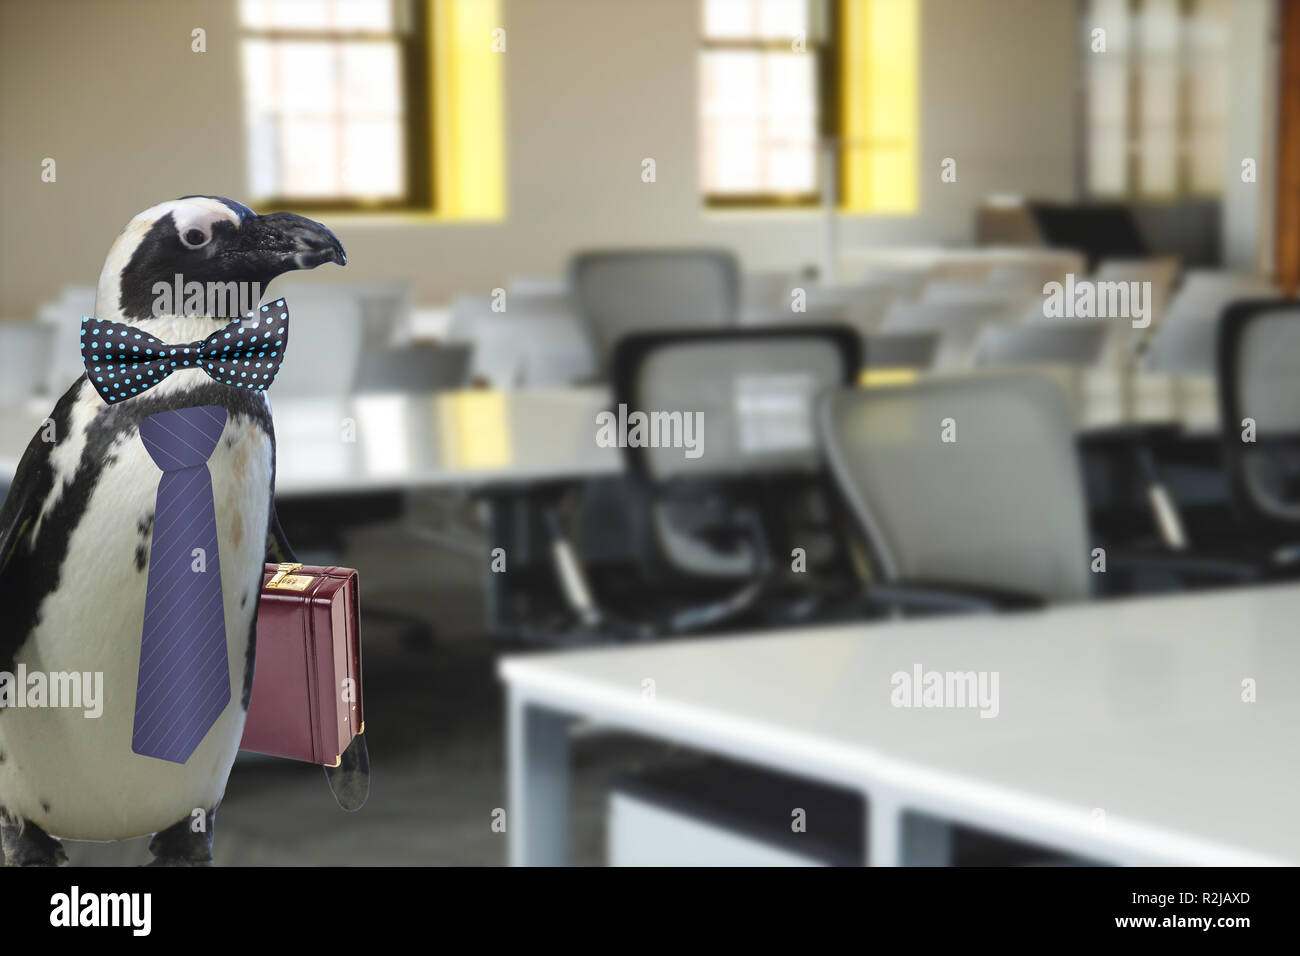 Lustiges Geschäft oder Lehrer der Schule Konzept der ein Pinguin in einem Riegel gekleidet und trägt einen Koffer stehen in einem Büro oder Klassenzimmer Stockfoto